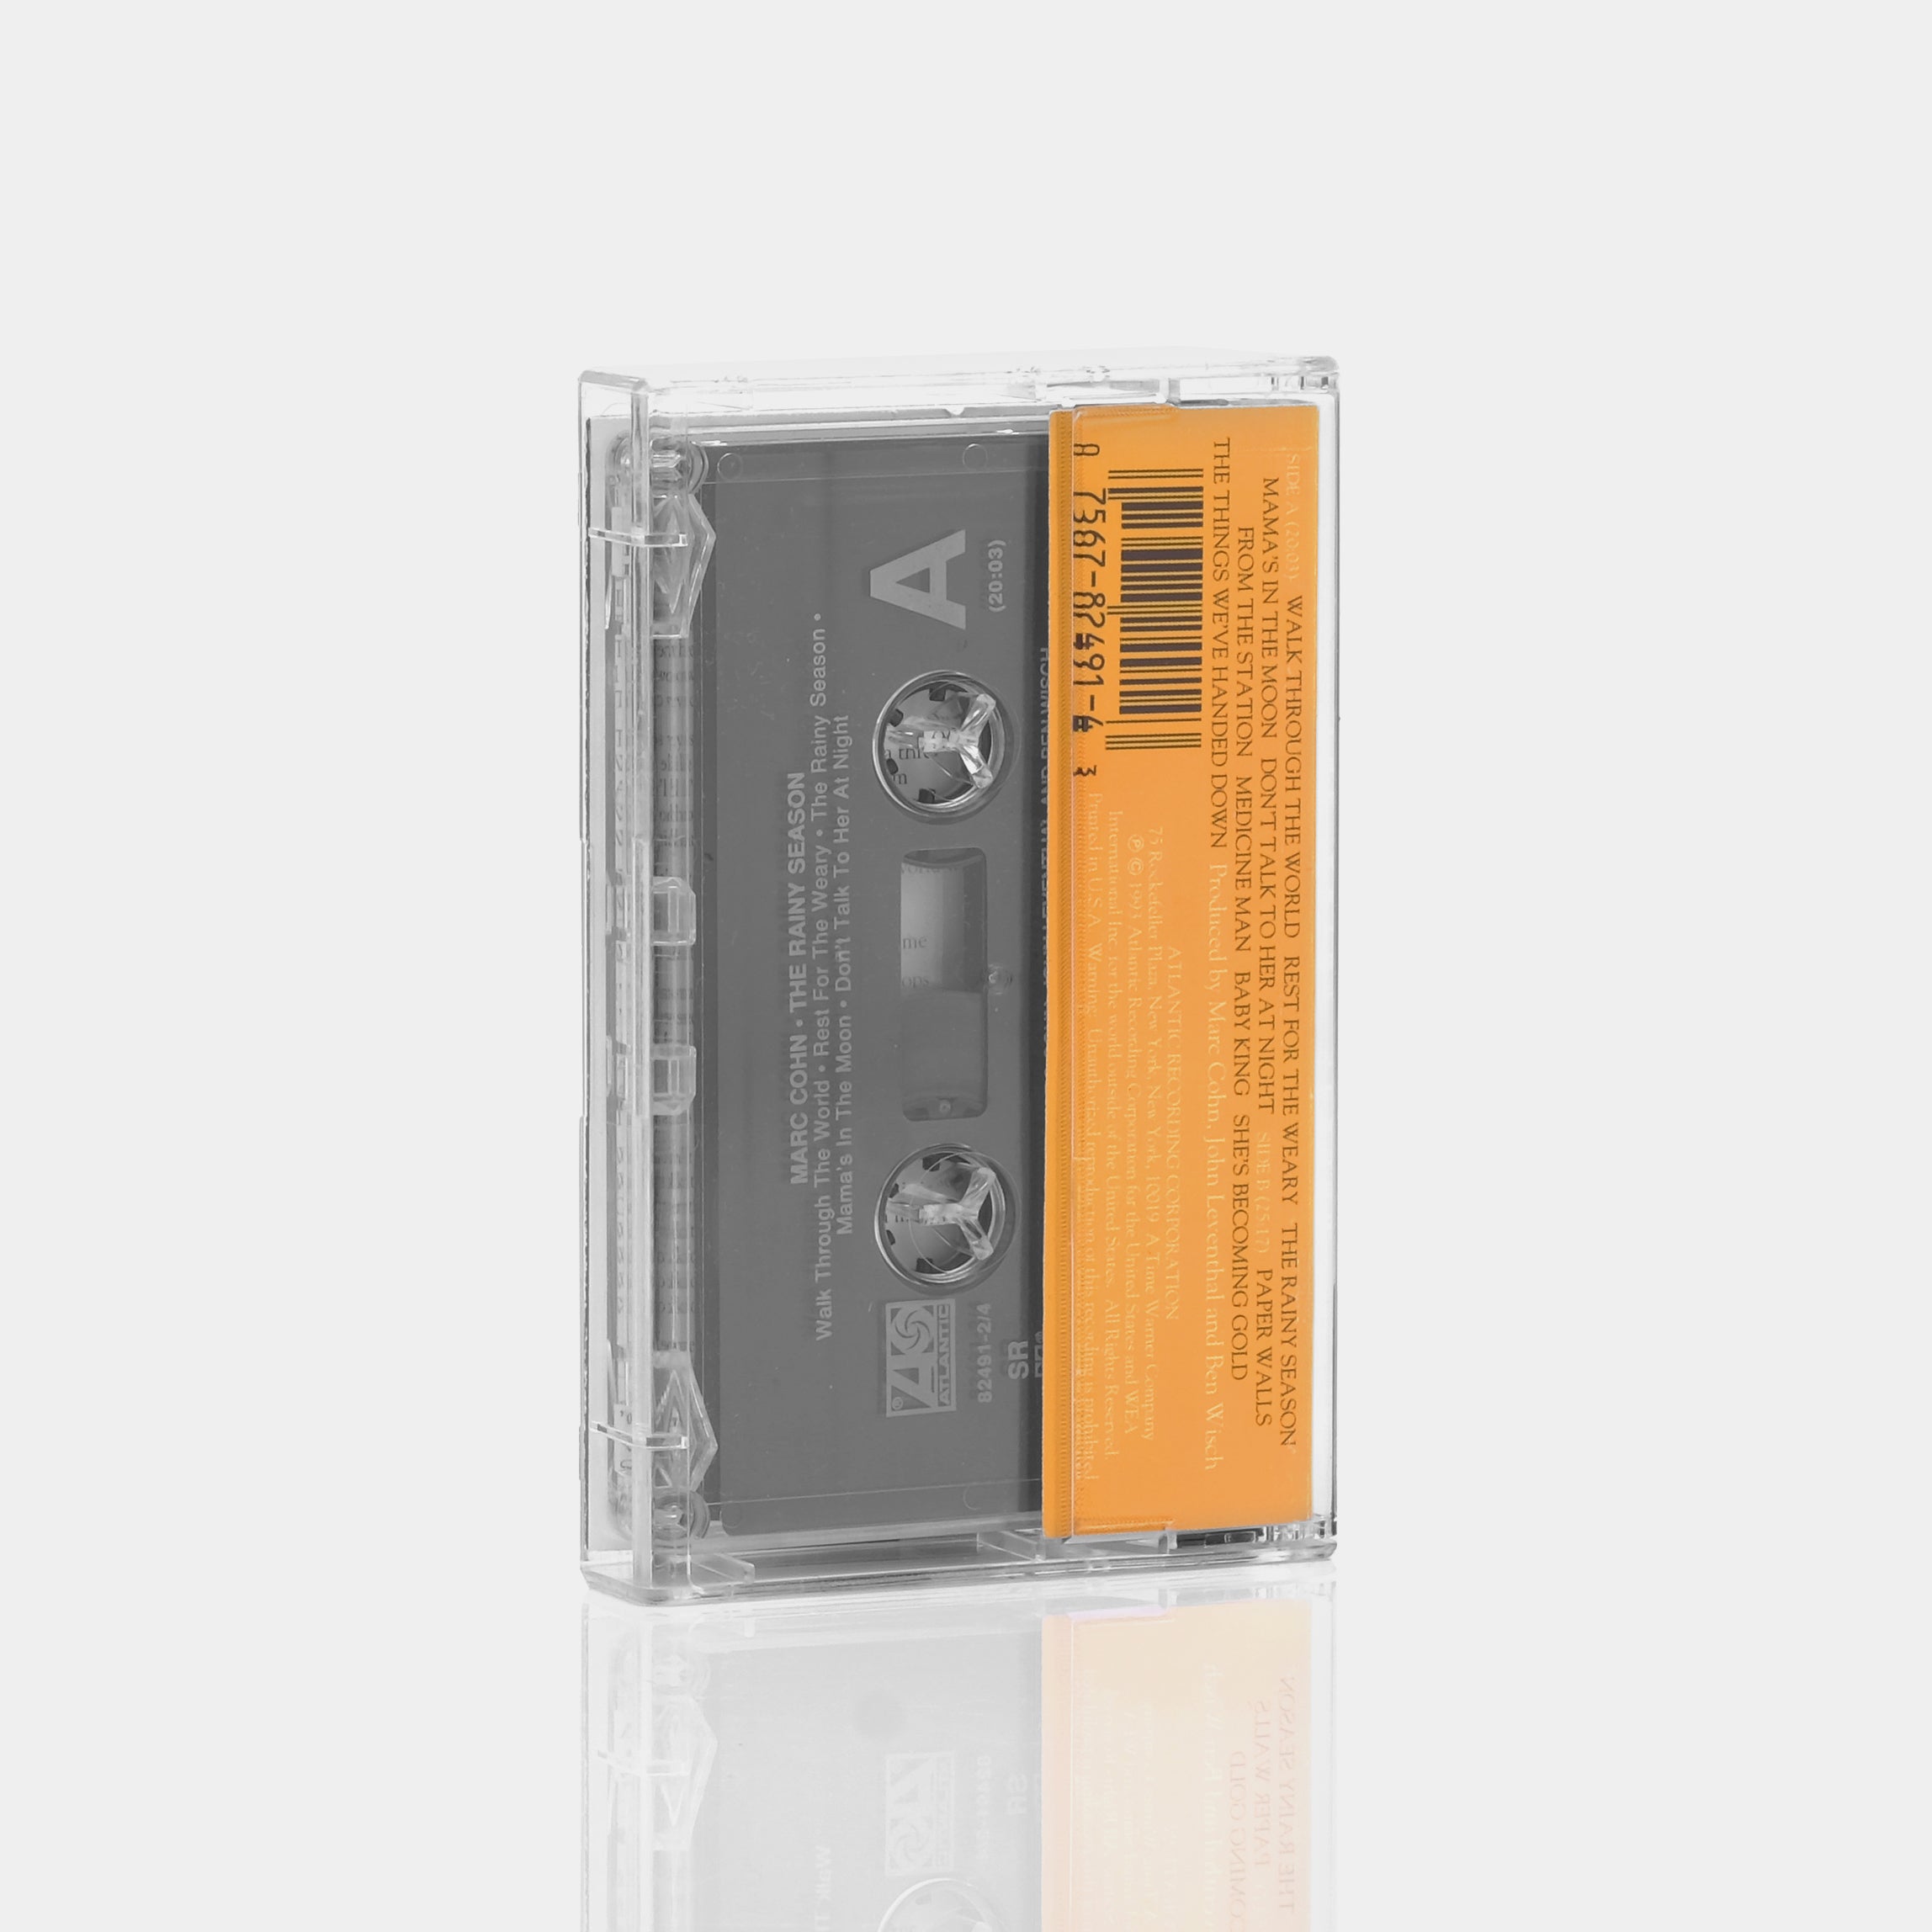 Marc Cohn - The Rainy Season Cassette Tape